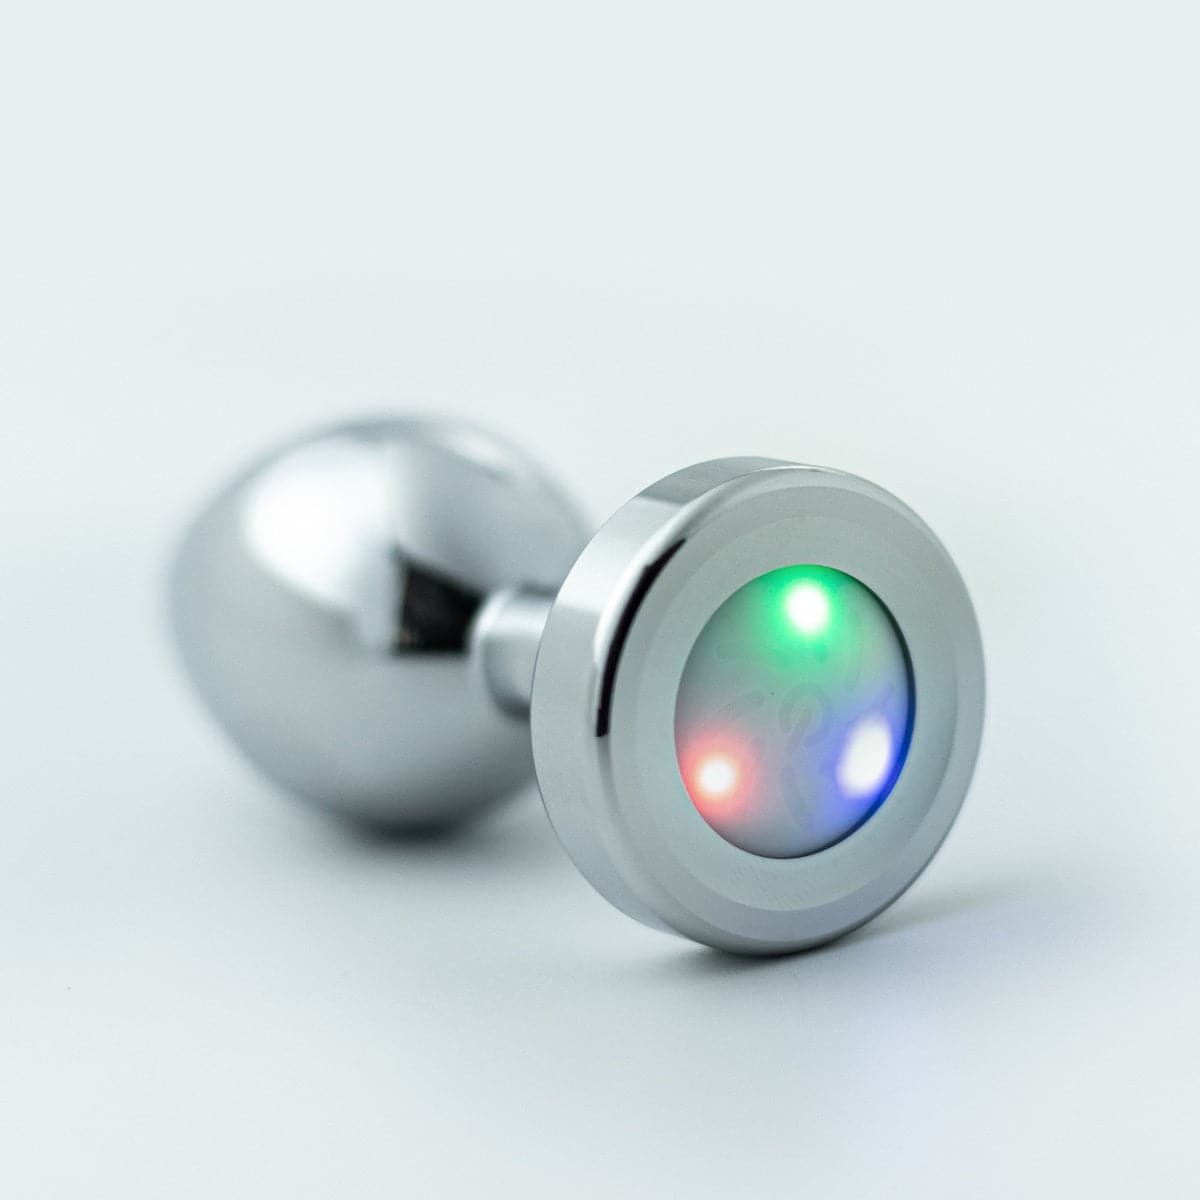 Plug de Metal Pequeno com LED, 7,2cm Ø2,7cm - Ilumine o seu prazer anal!